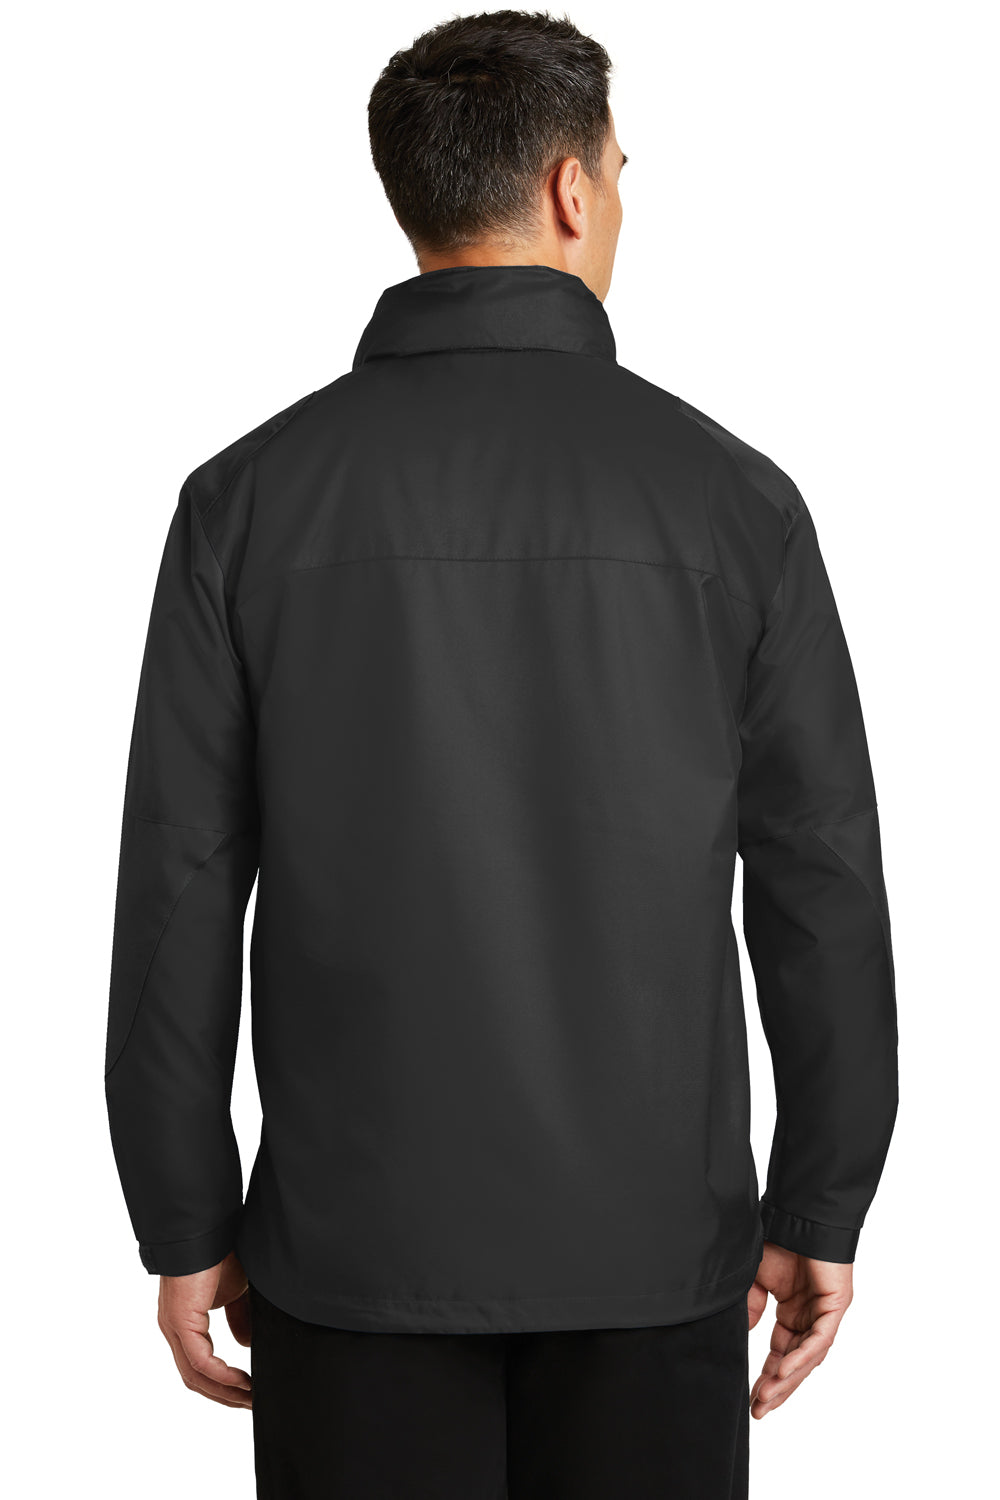 Port Authority J768 Mens Endeavor Wind & Water Resistant Full Zip Hooded Jacket Black Back